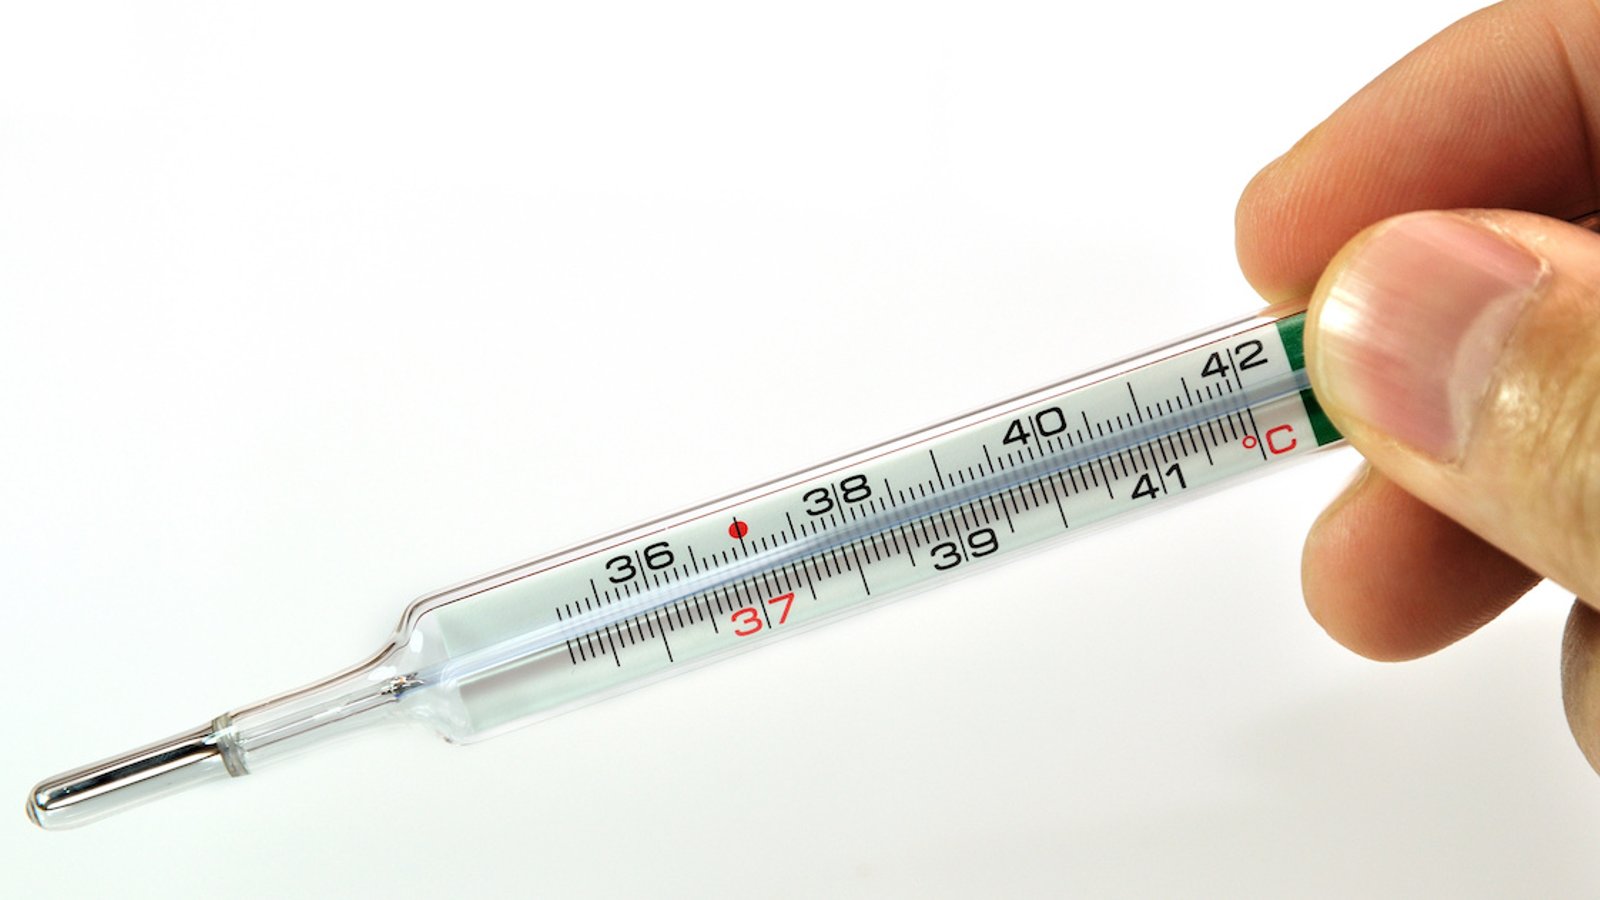 Découverte médicale: la température de base du corps humain n’est plus de 37°C